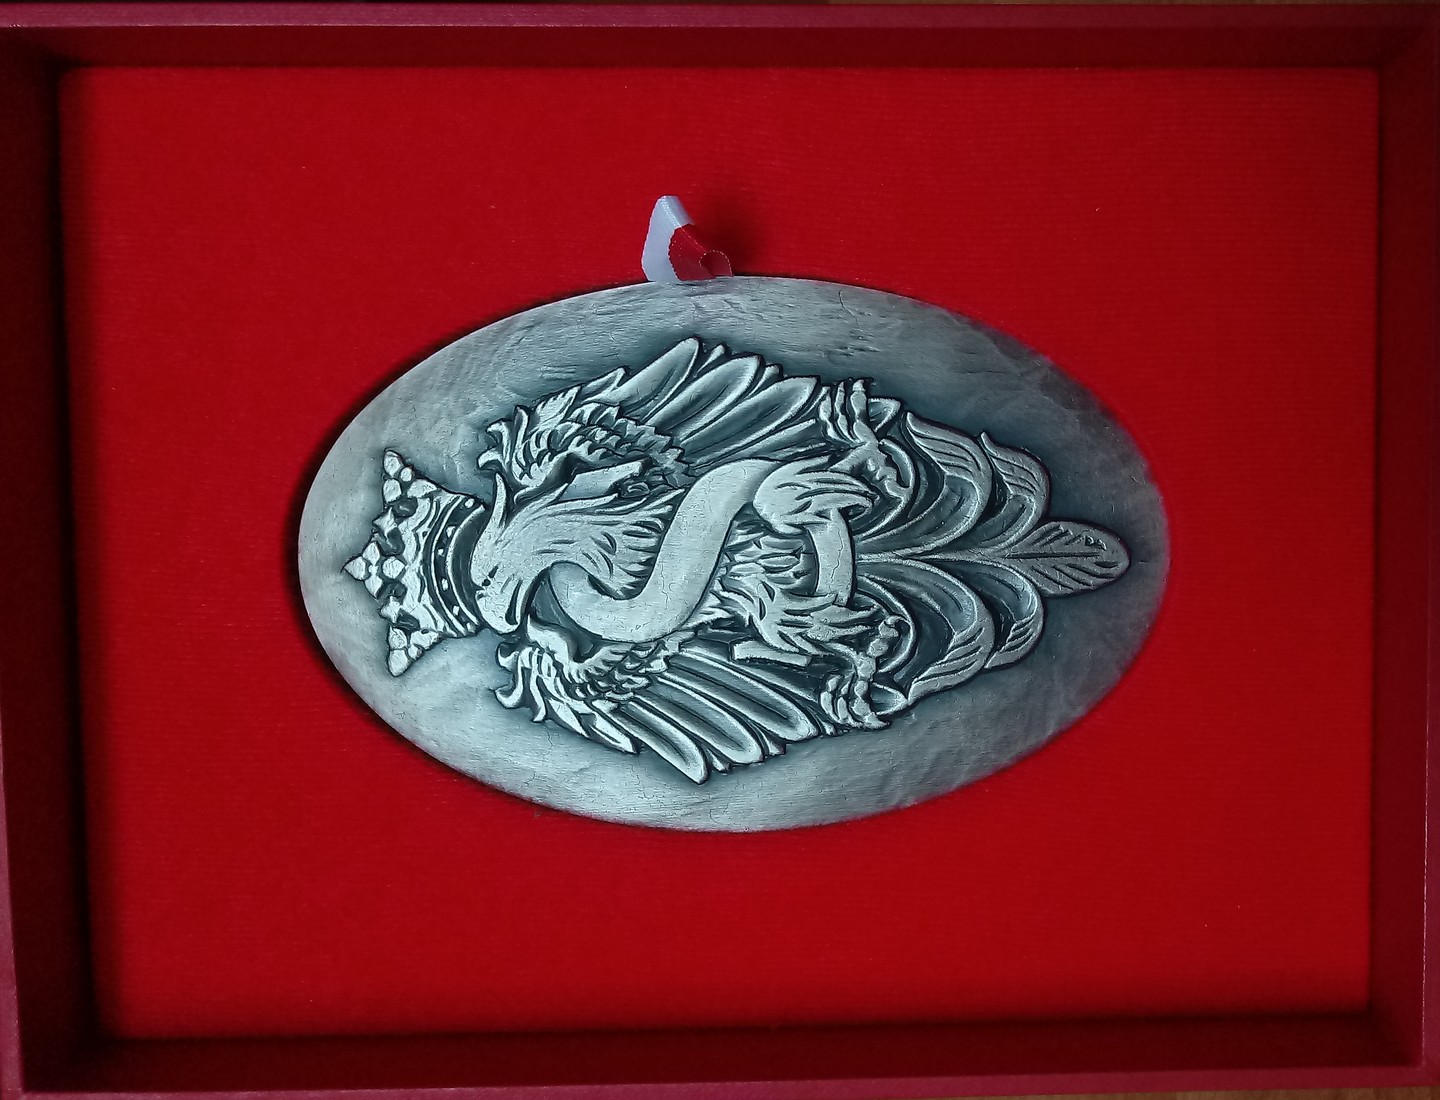 2023 medal